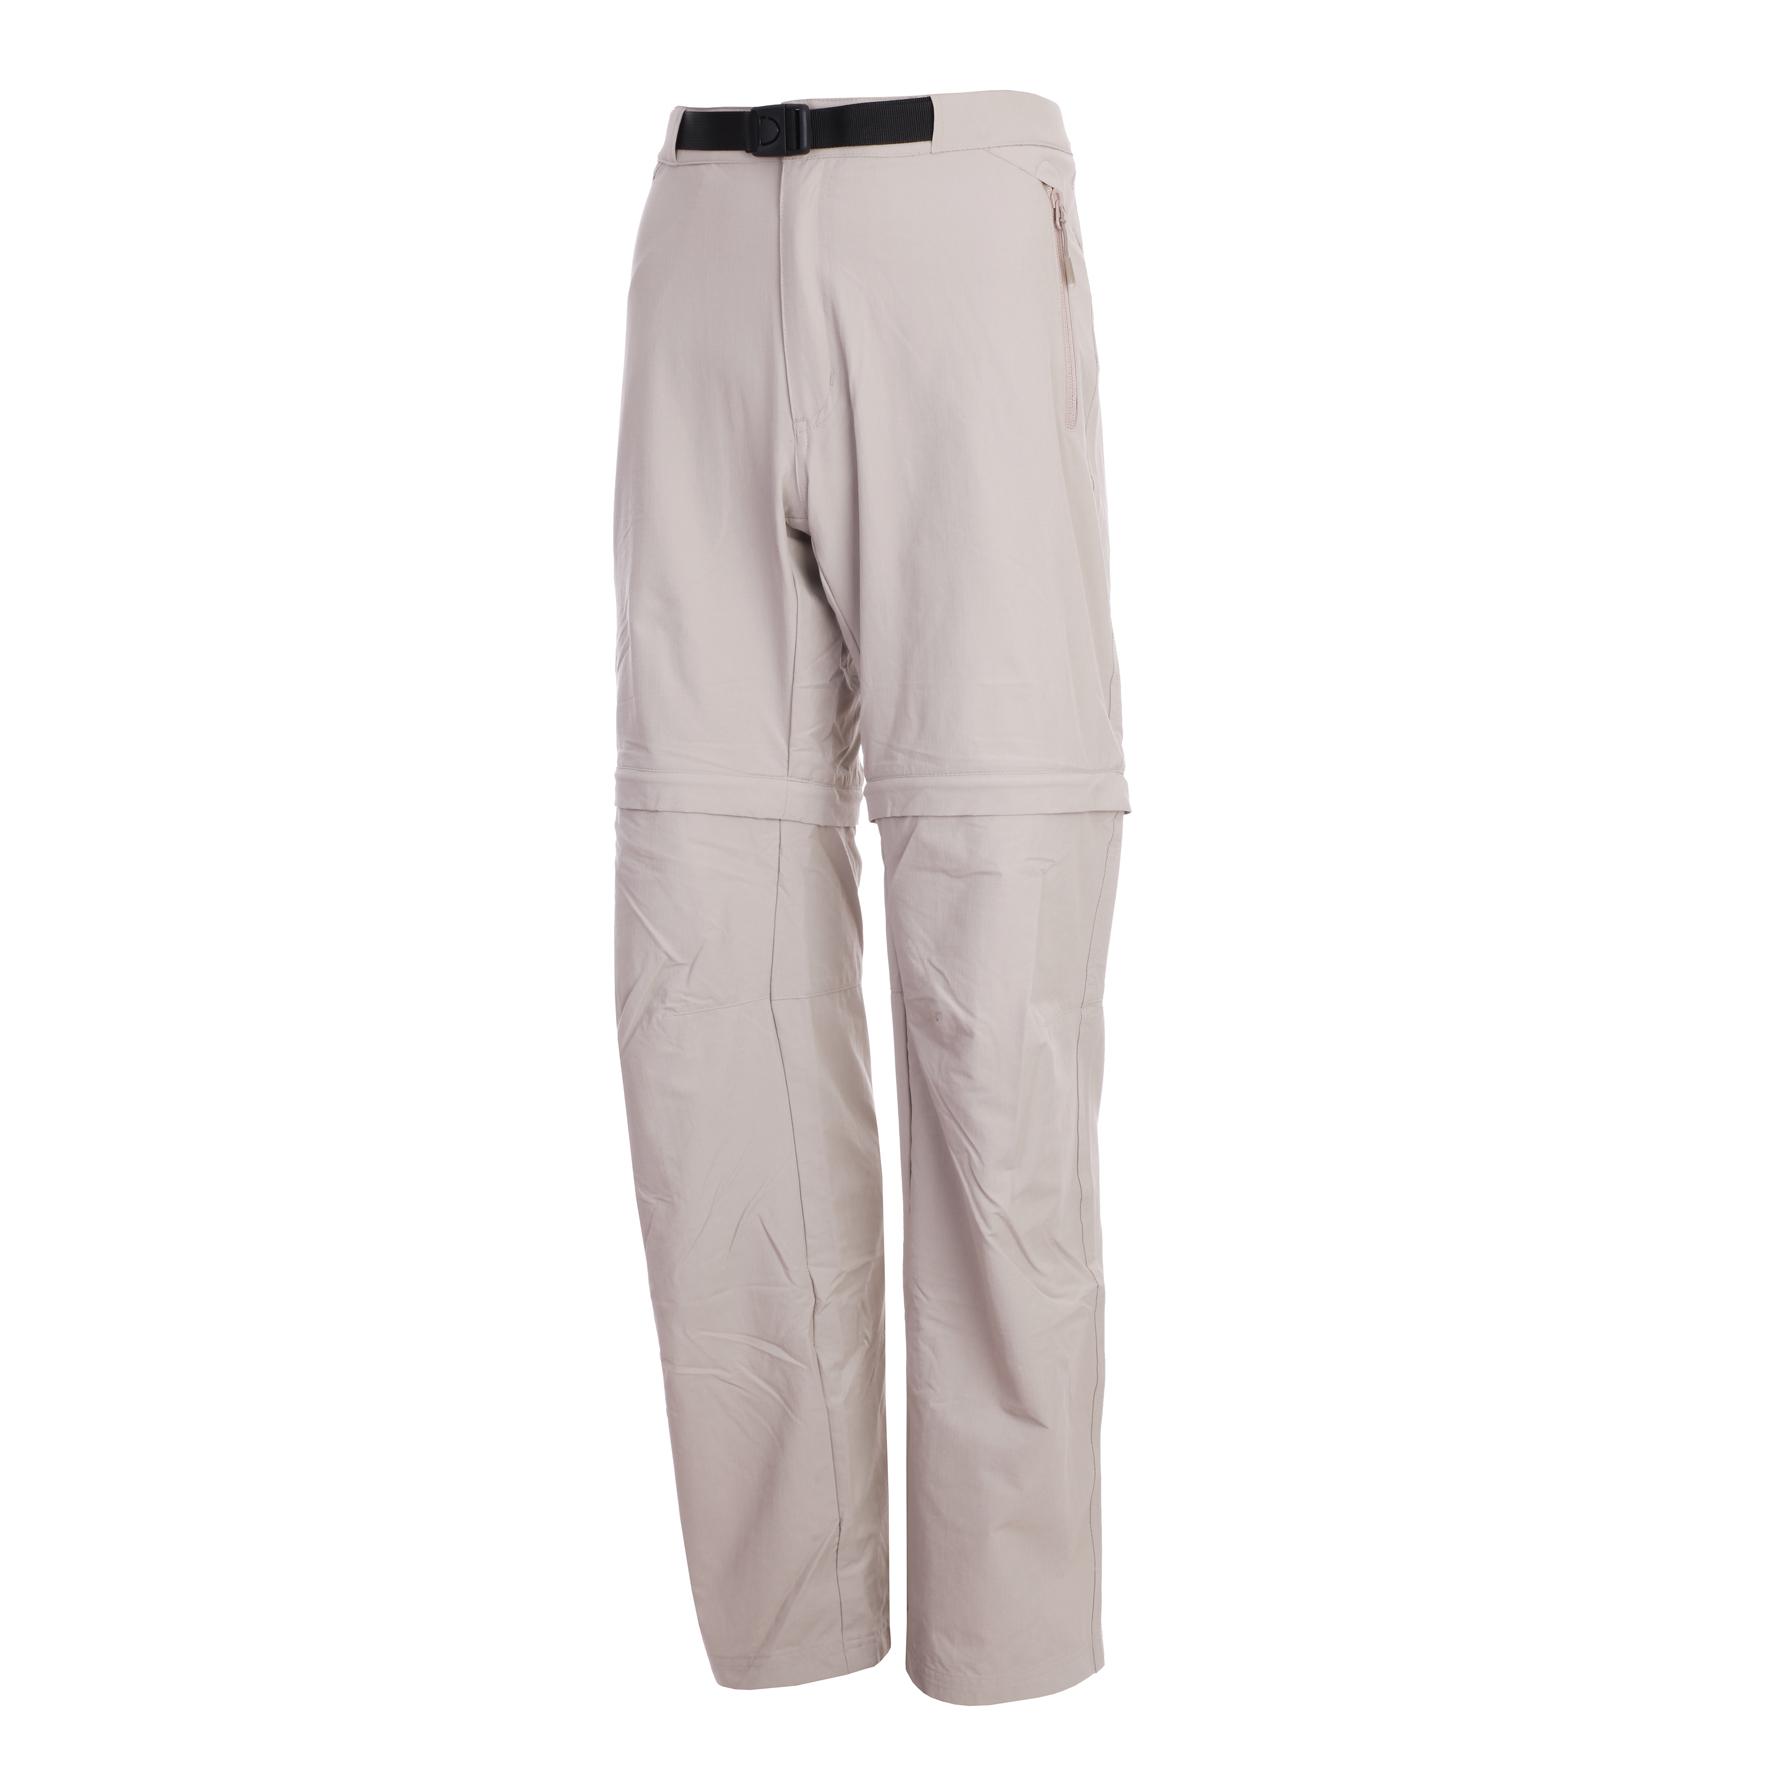 Foto Pantalones desmontables Lafuma PX beige/gris para hombre , 52